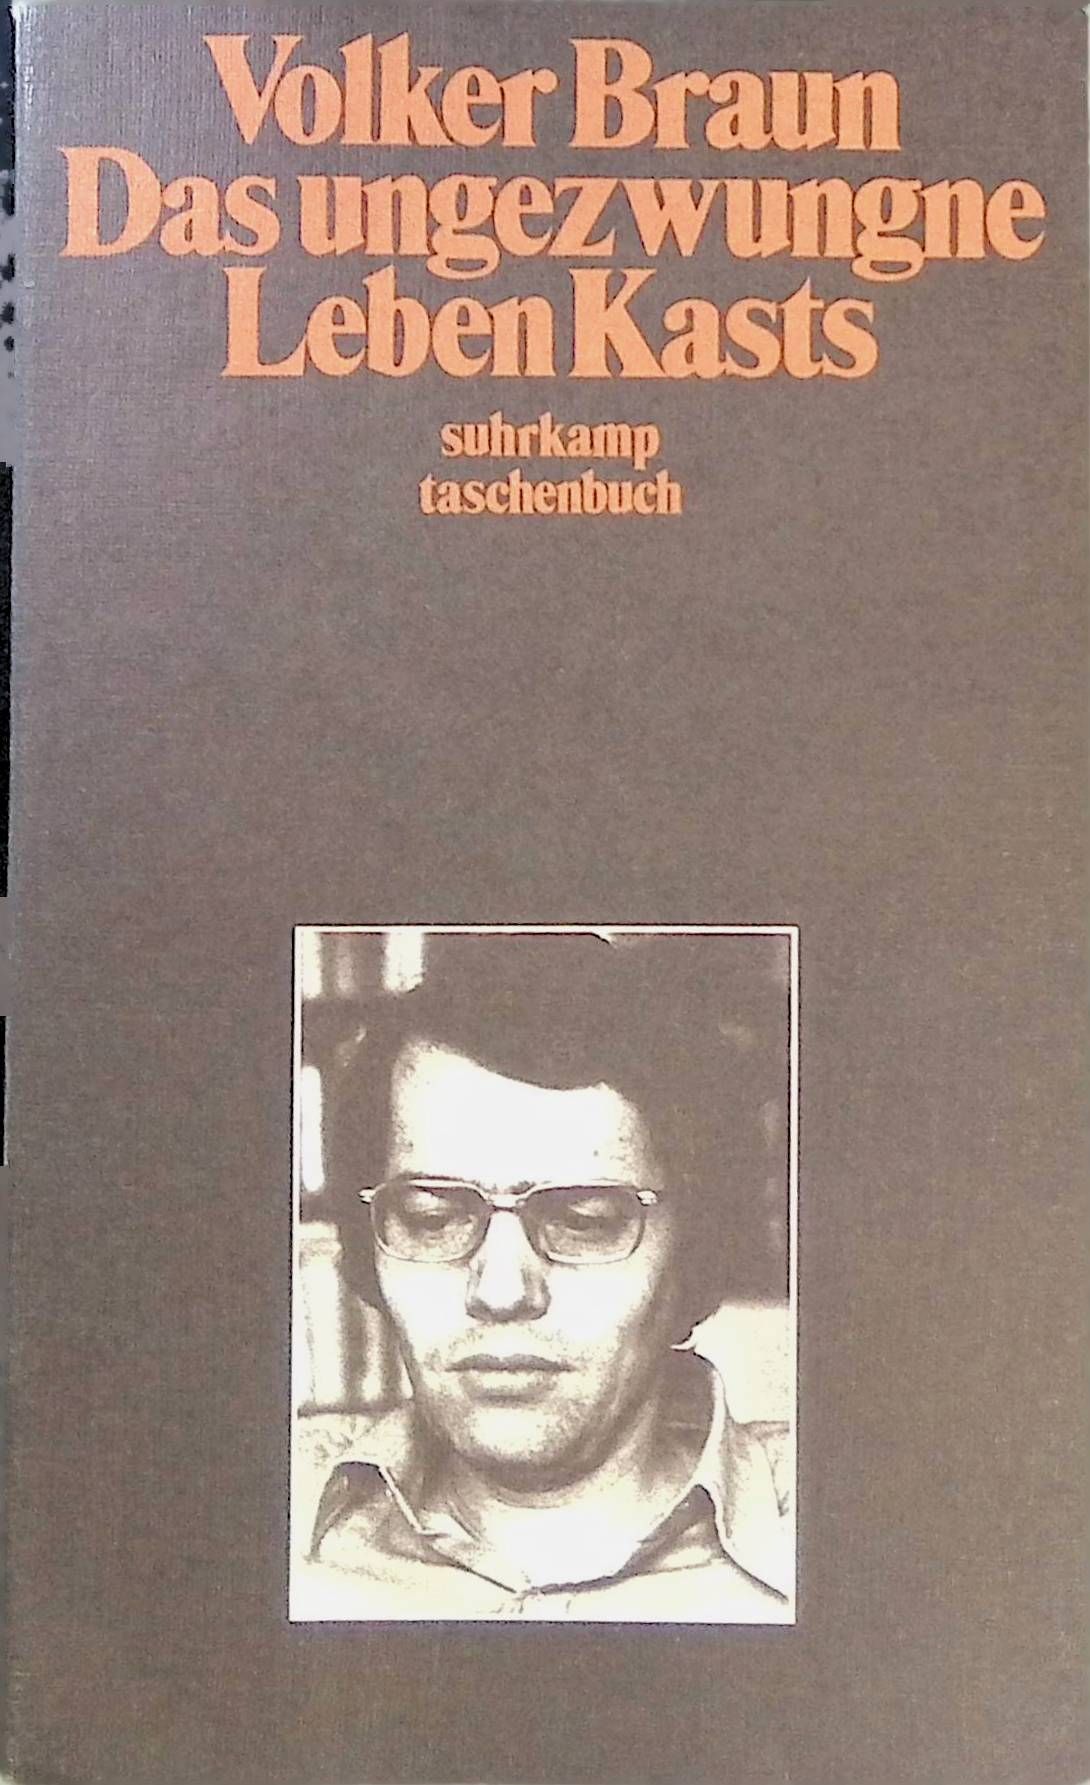 Das ungezwungne Leben Kasts. edition suhrkamp (Band 546) - Braun, Volker